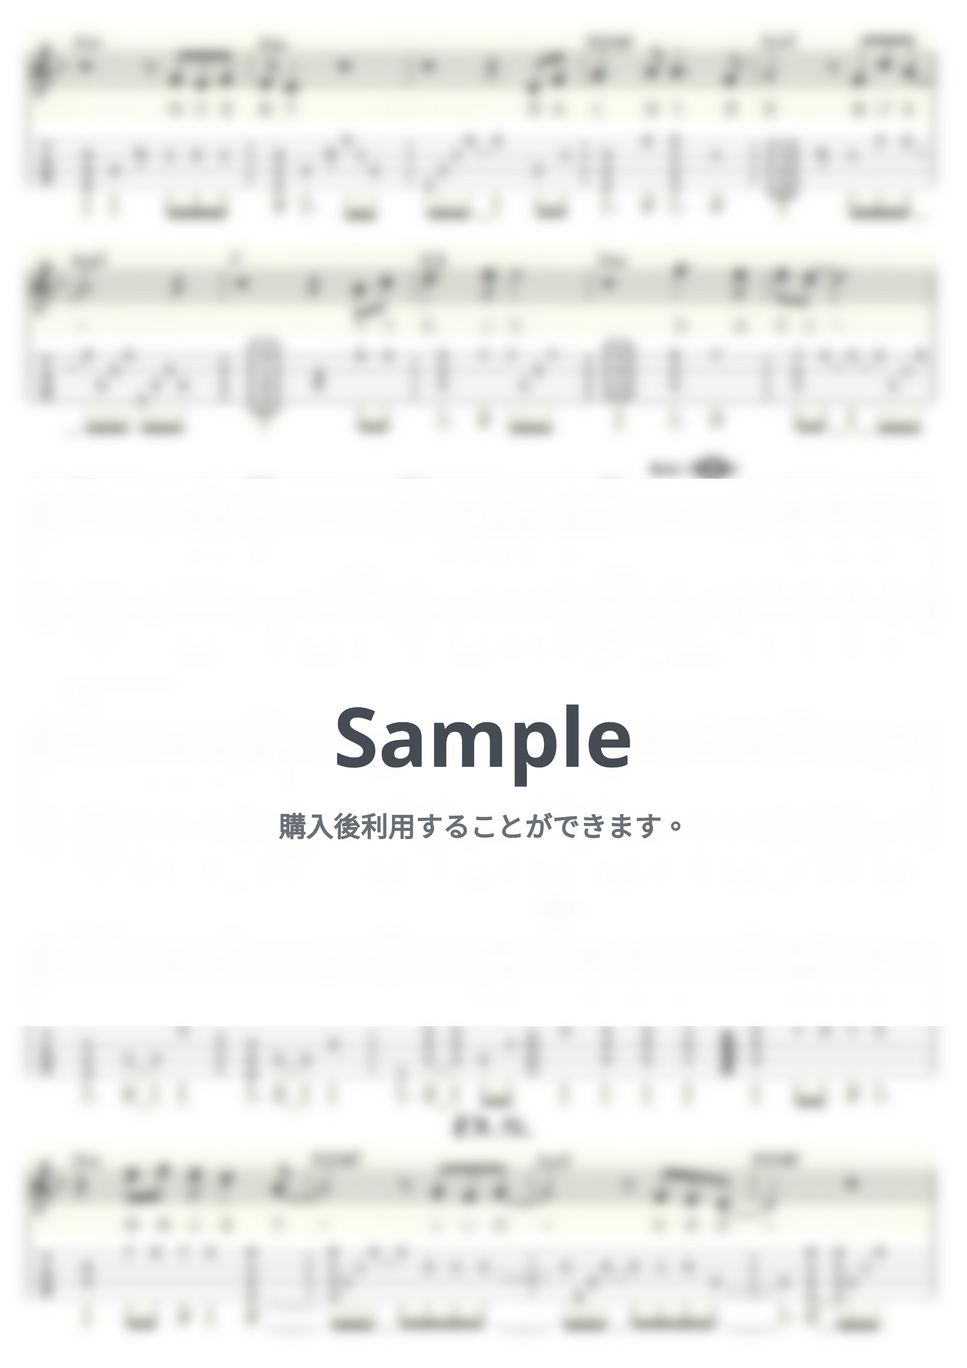 徳永英明 - 風のエオリア (ｳｸﾚﾚｿﾛ/Low-G/中級) by ukulelepapa